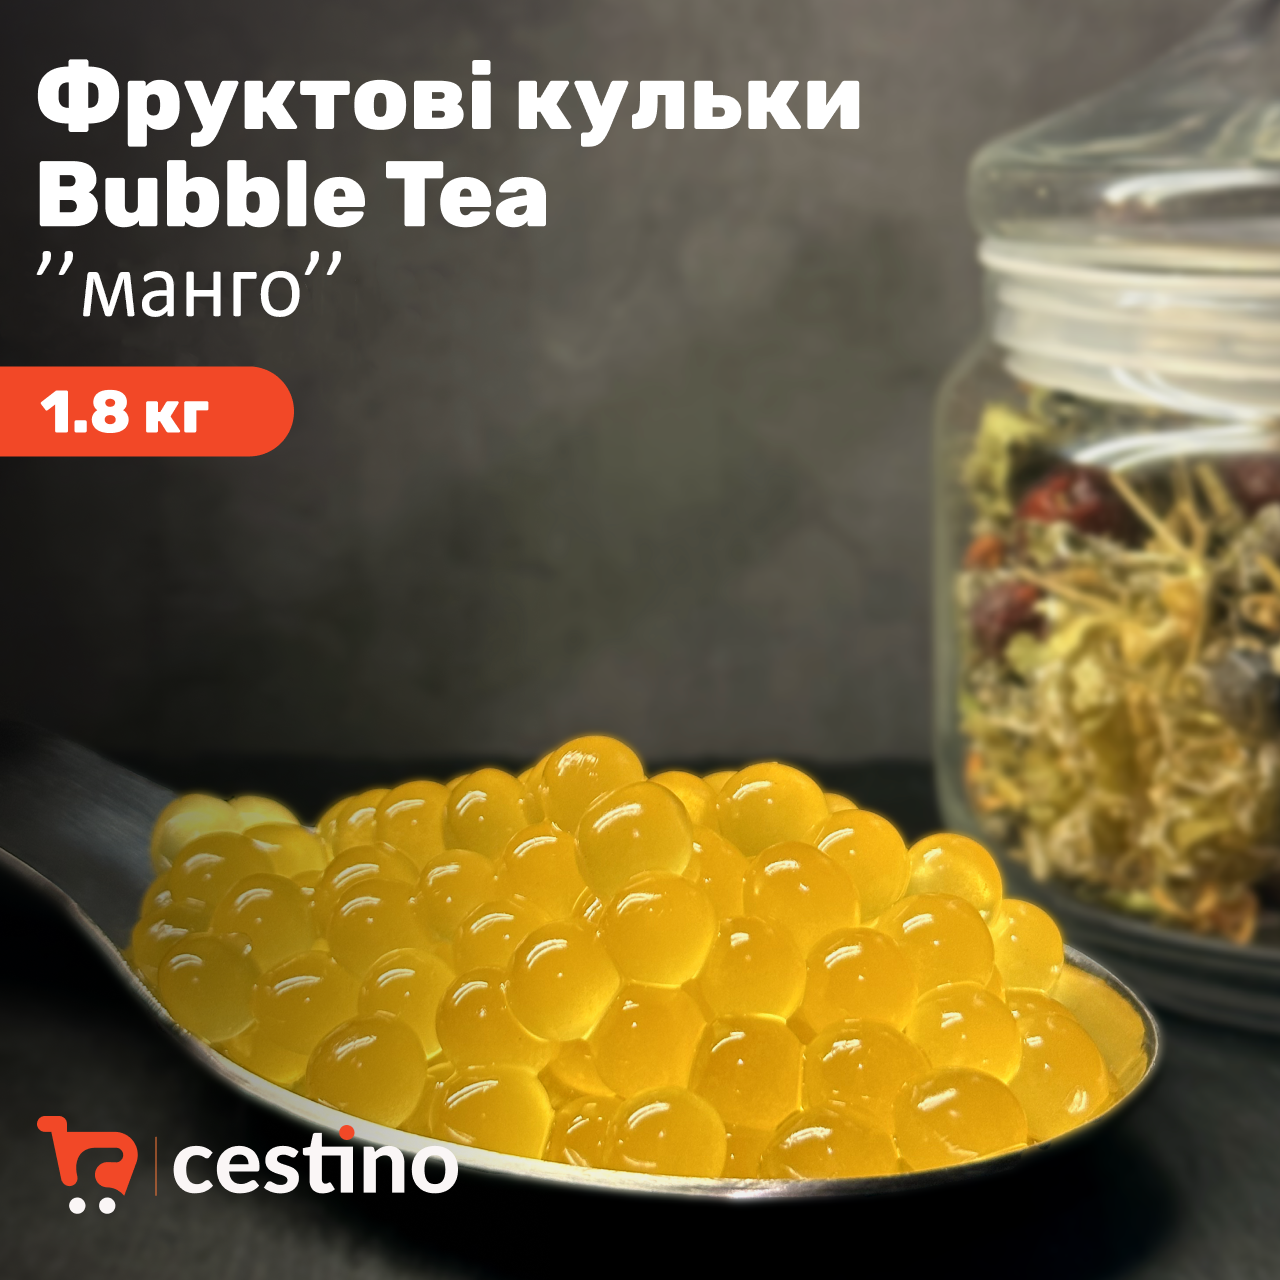 Фруктові кульки Bubble Tea "МАНГО" 1,8 кг